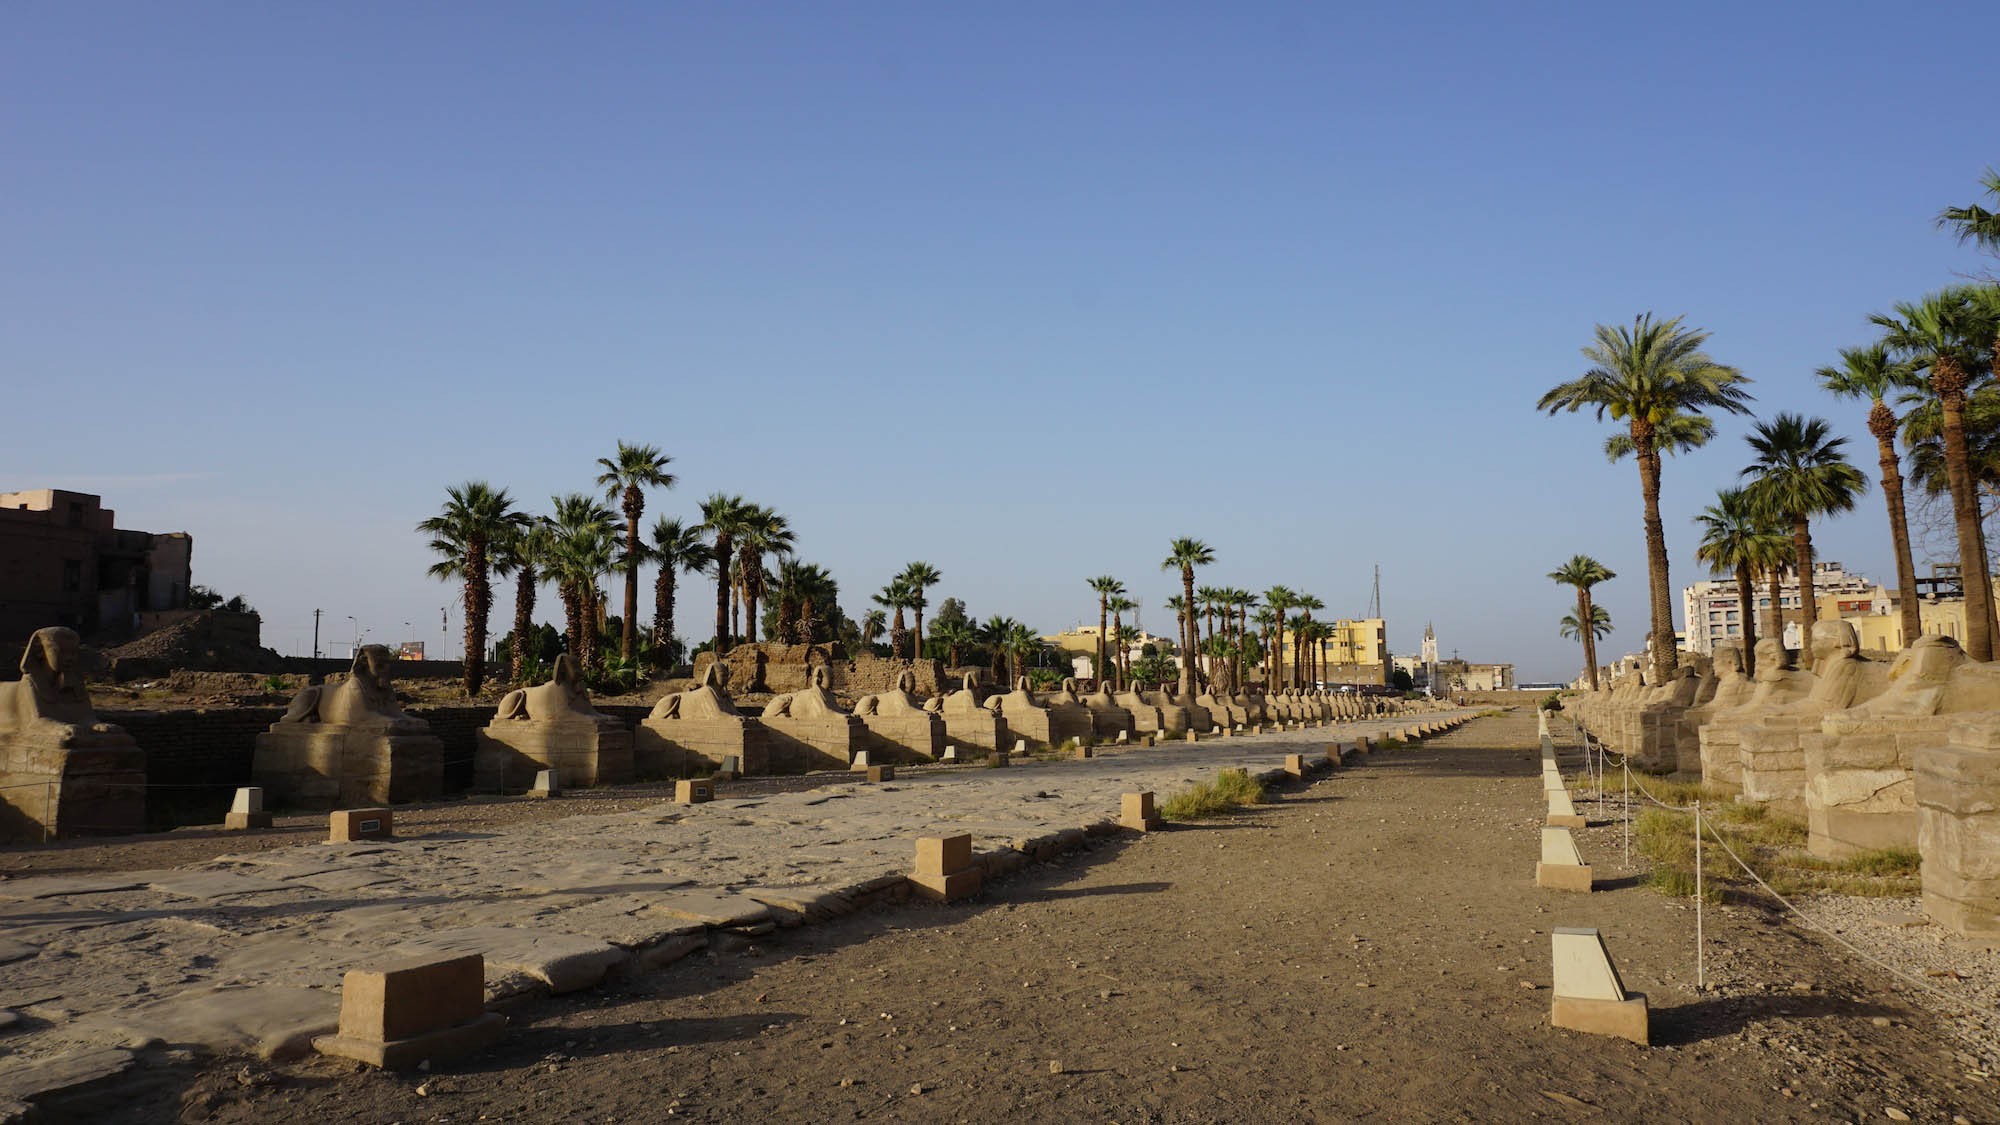 三公里长的Avenue of Sphinxes，我和二哥只从Luxor Temple走了一小段，有一些游客会走完，一直到Karnak Temple去。